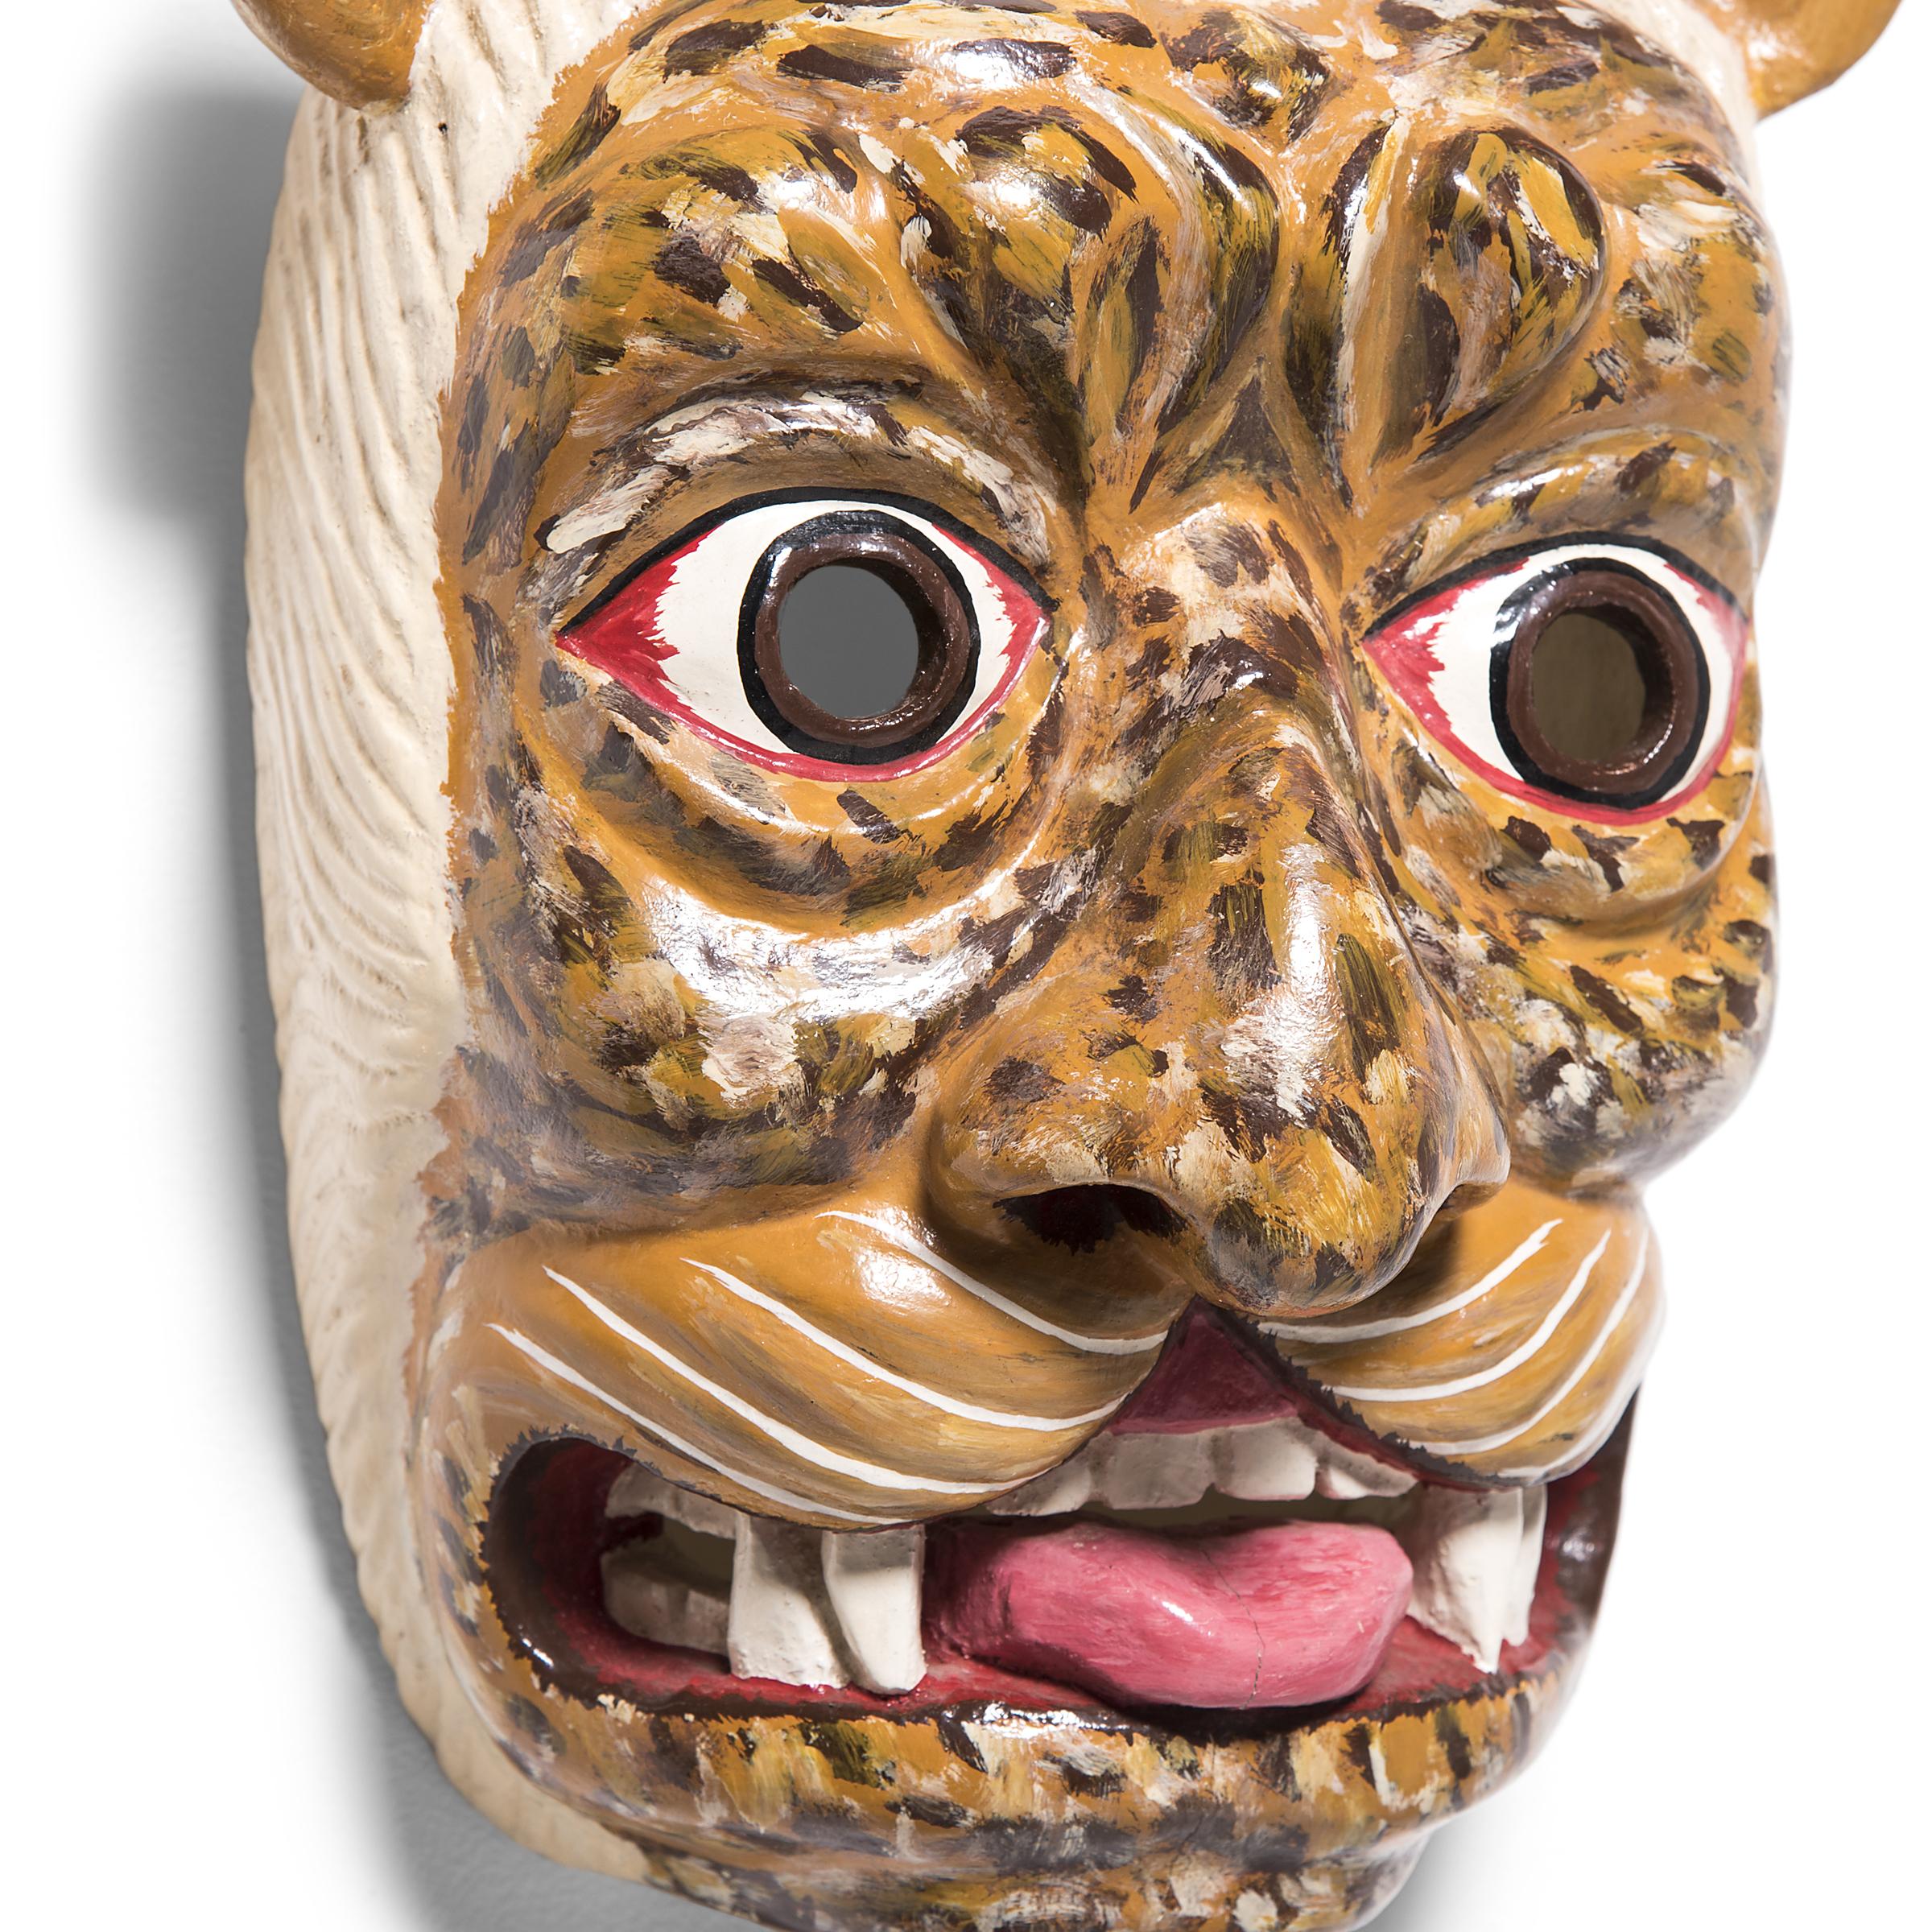 Le masque de jaguar est un élément essentiel de la danse et du rituel mexicains traditionnels, symbolisant la puissance et la férocité. Ce masque provient de l'État de Guerrero, au Mexique, connu pour son riche patrimoine culturel et son art